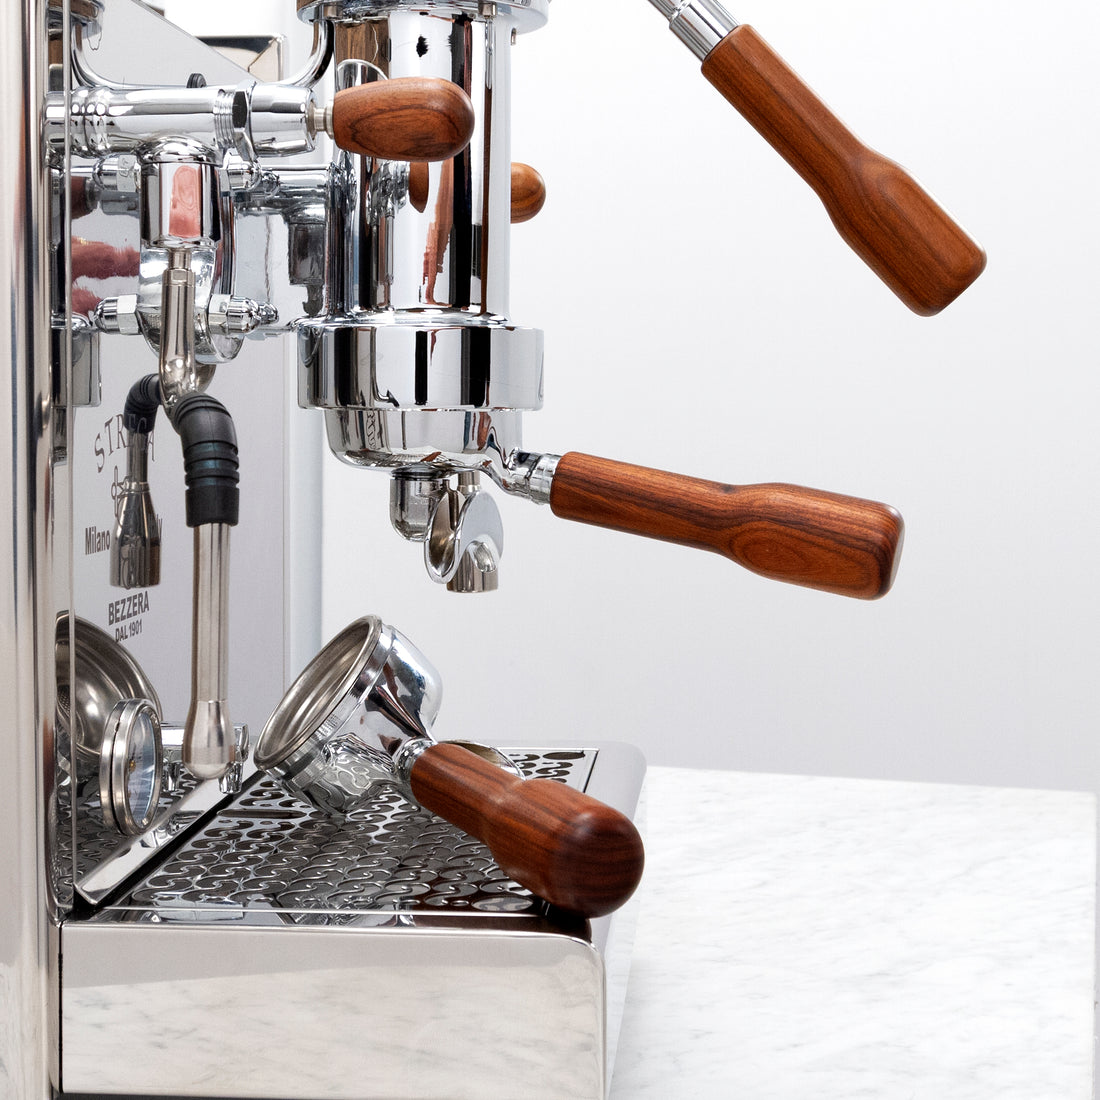 Bezzera Strega Commercial Espresso Lever Machine